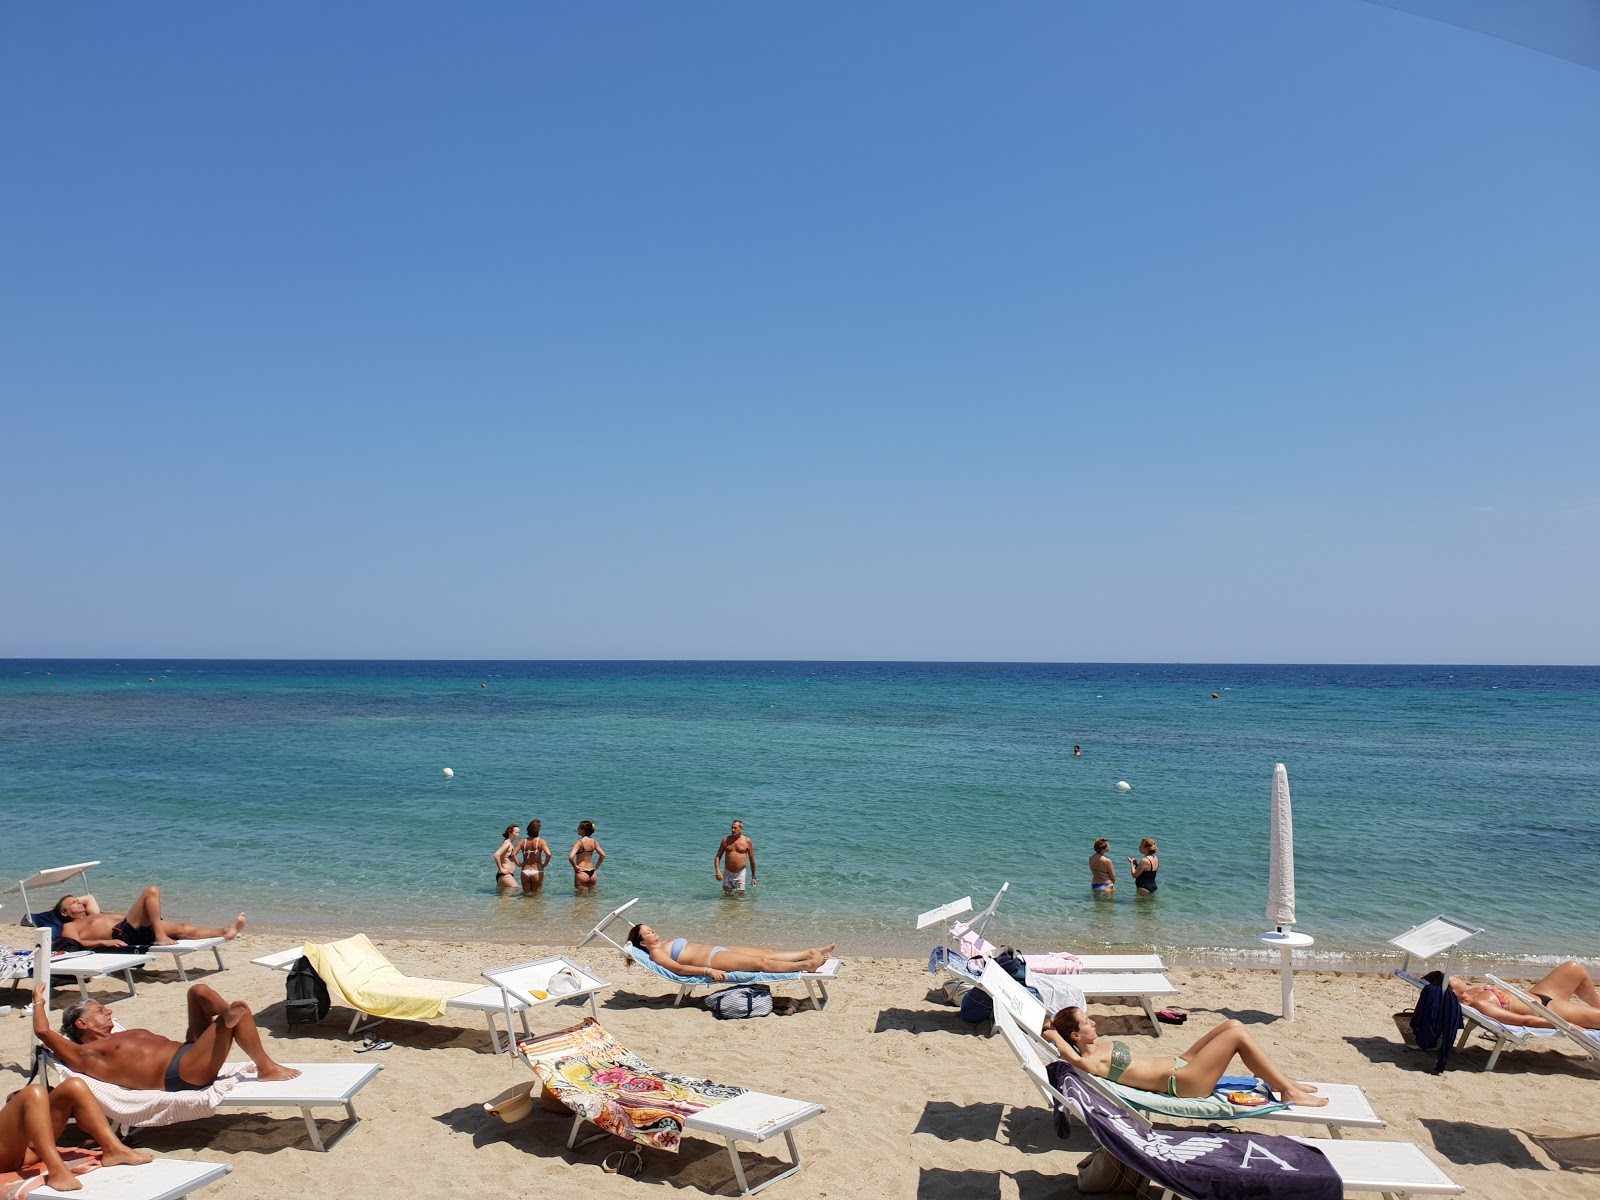 Foto von Spiaggia San Cataldo - beliebter Ort unter Entspannungskennern